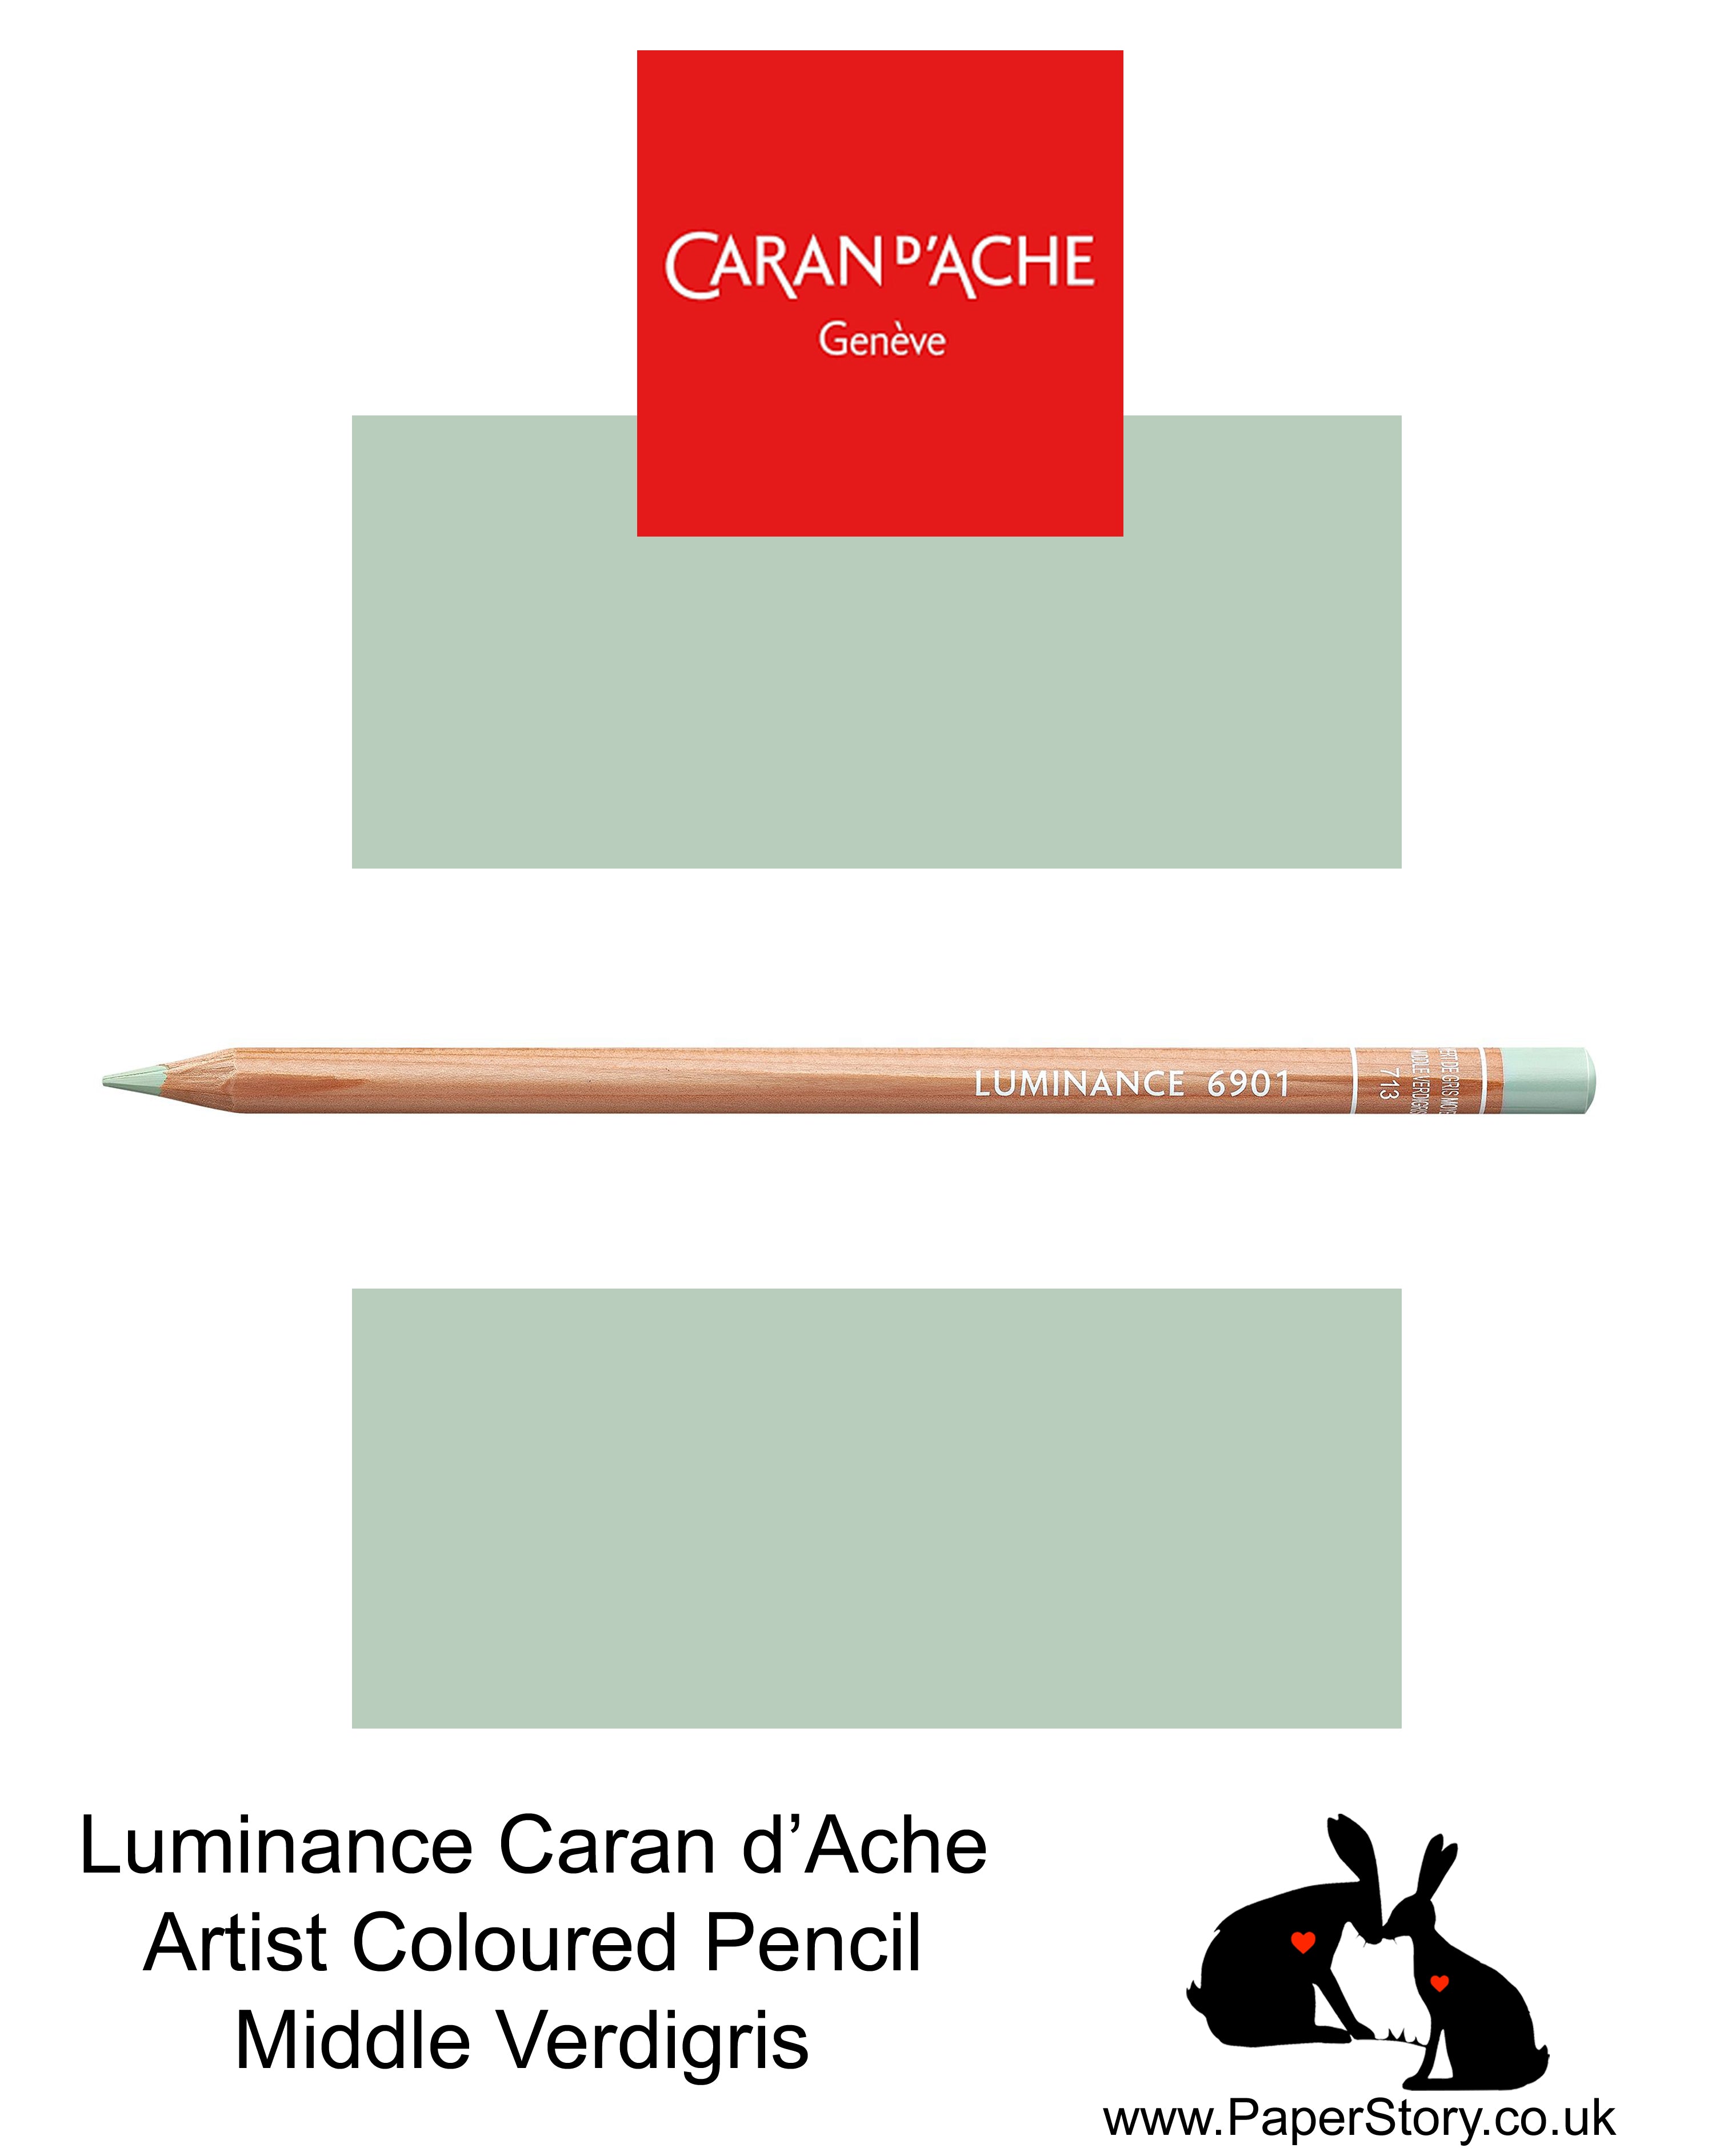 NEW Caran d'Ache Luminance individual Artist Colour Pencils 6901 Middle Verdigris 713